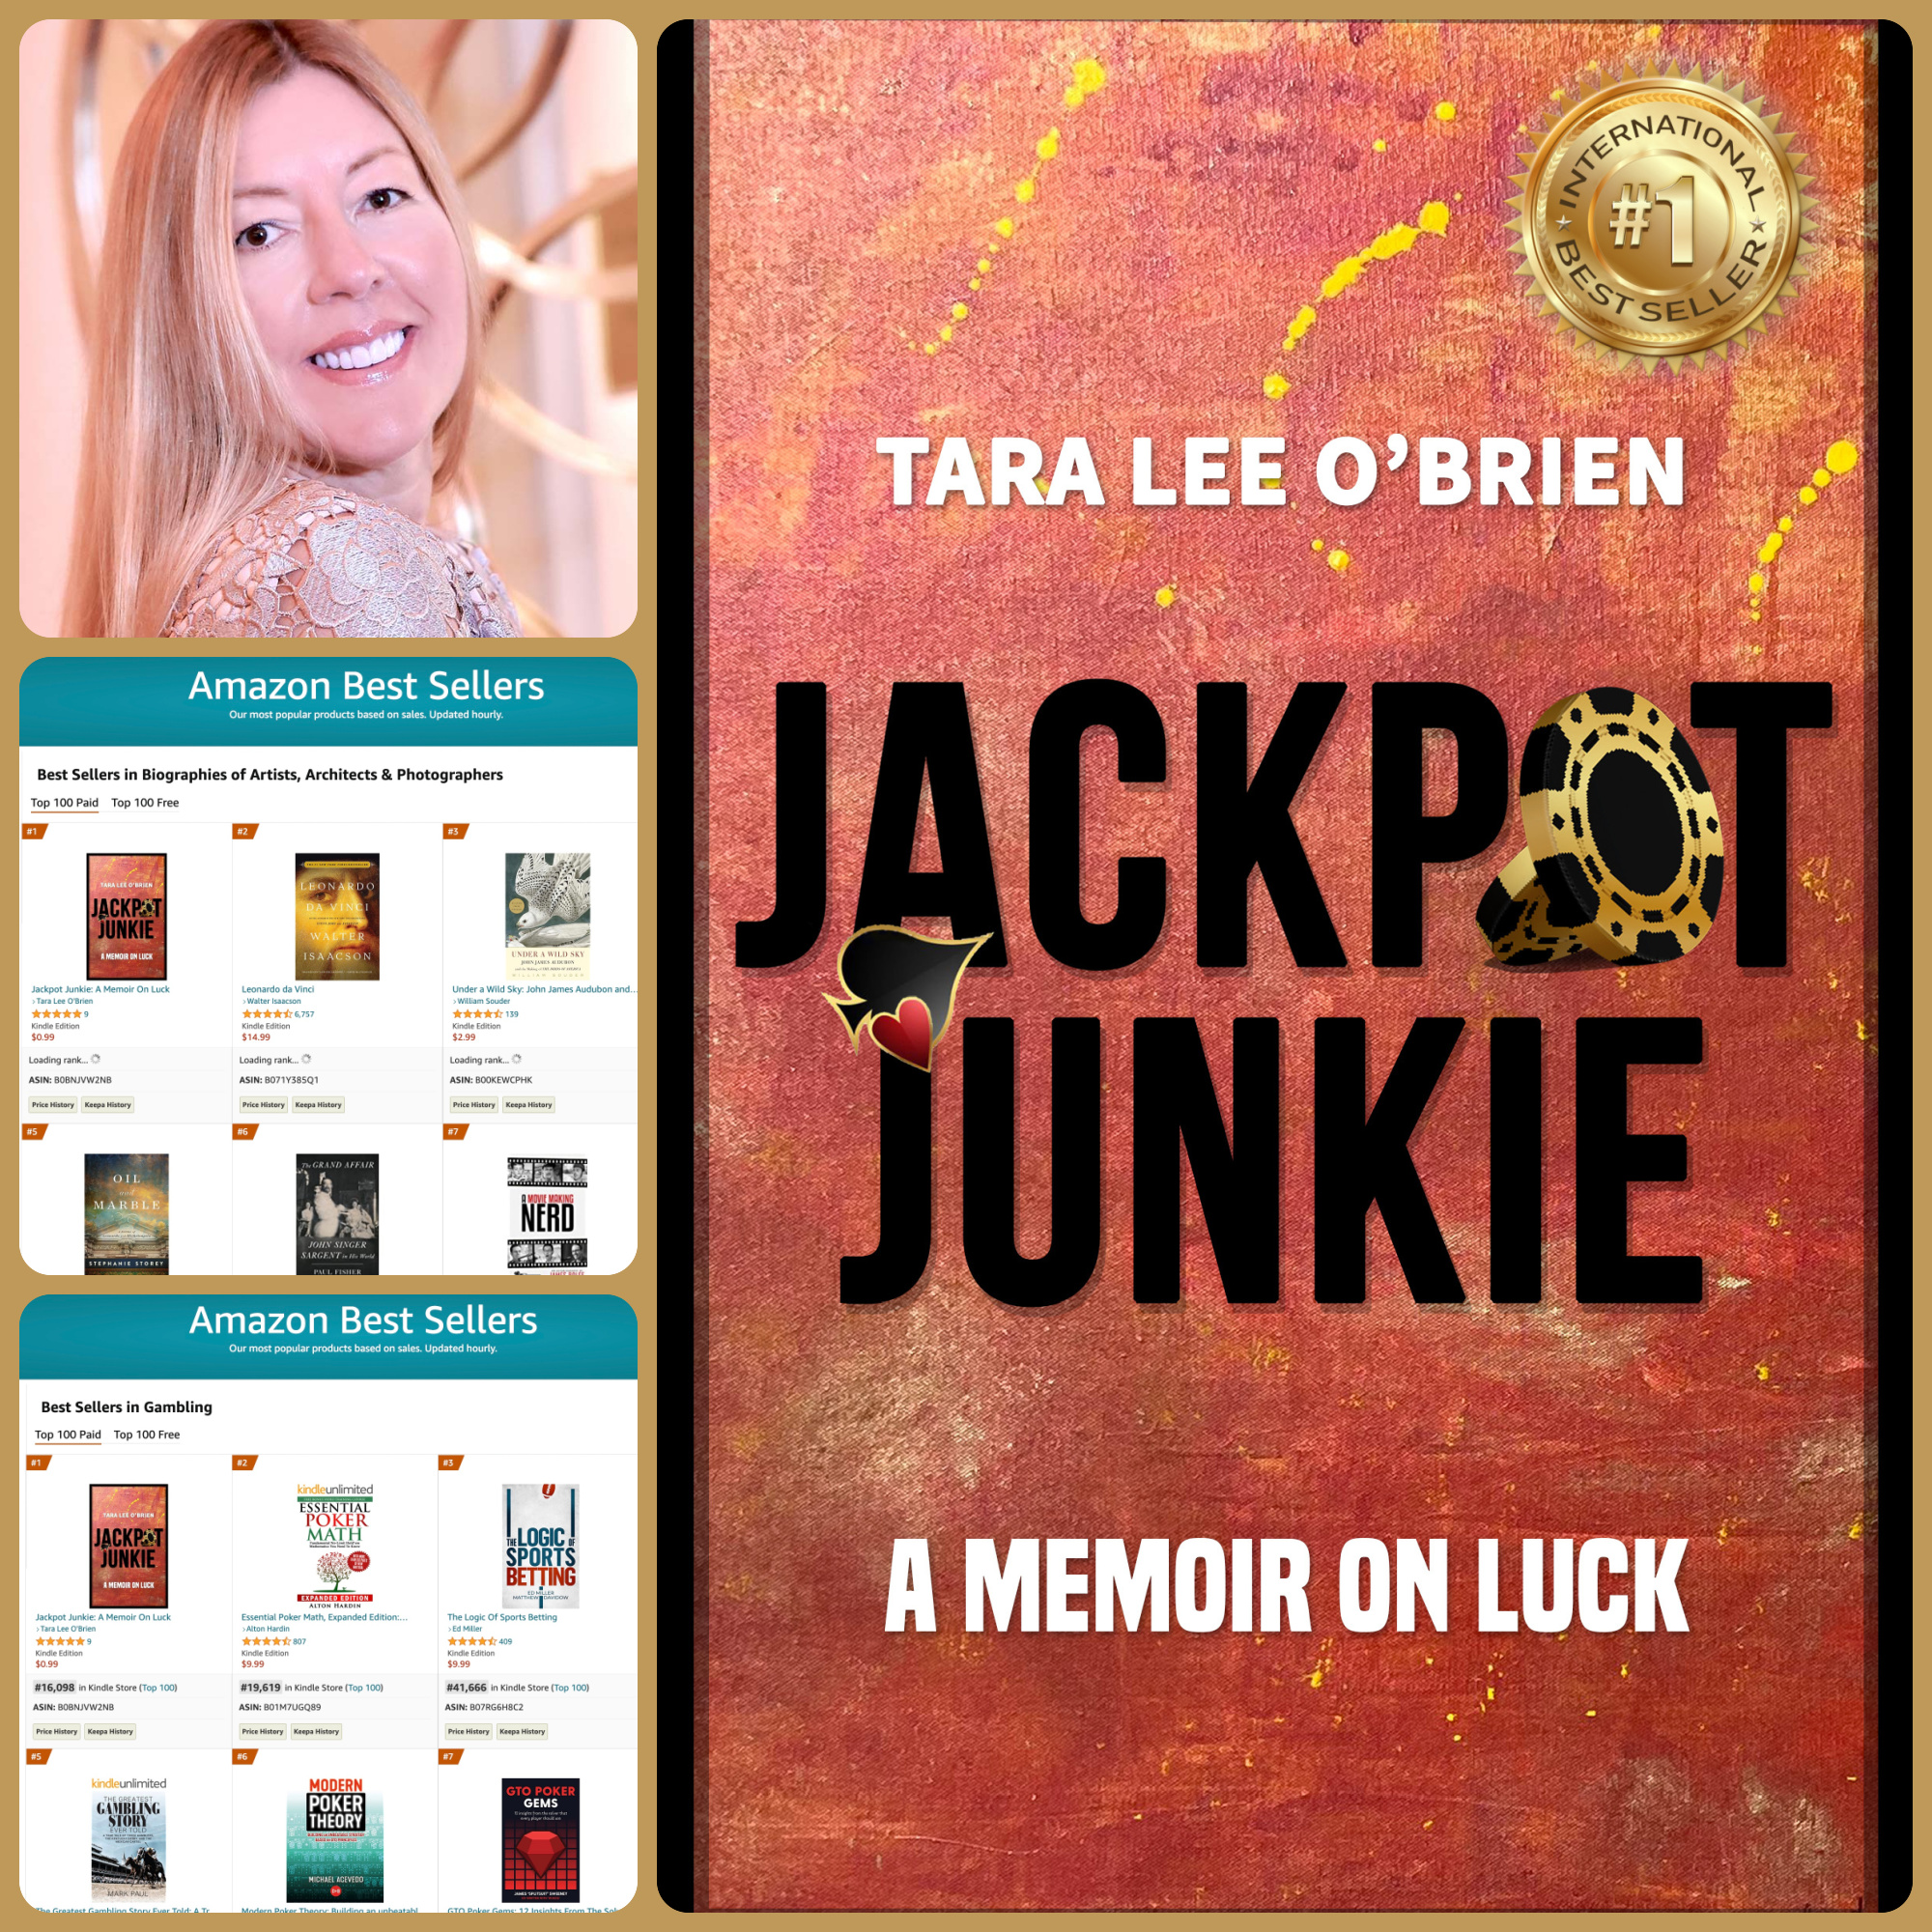 Jackpot Junkie Tara Lee O'Brien